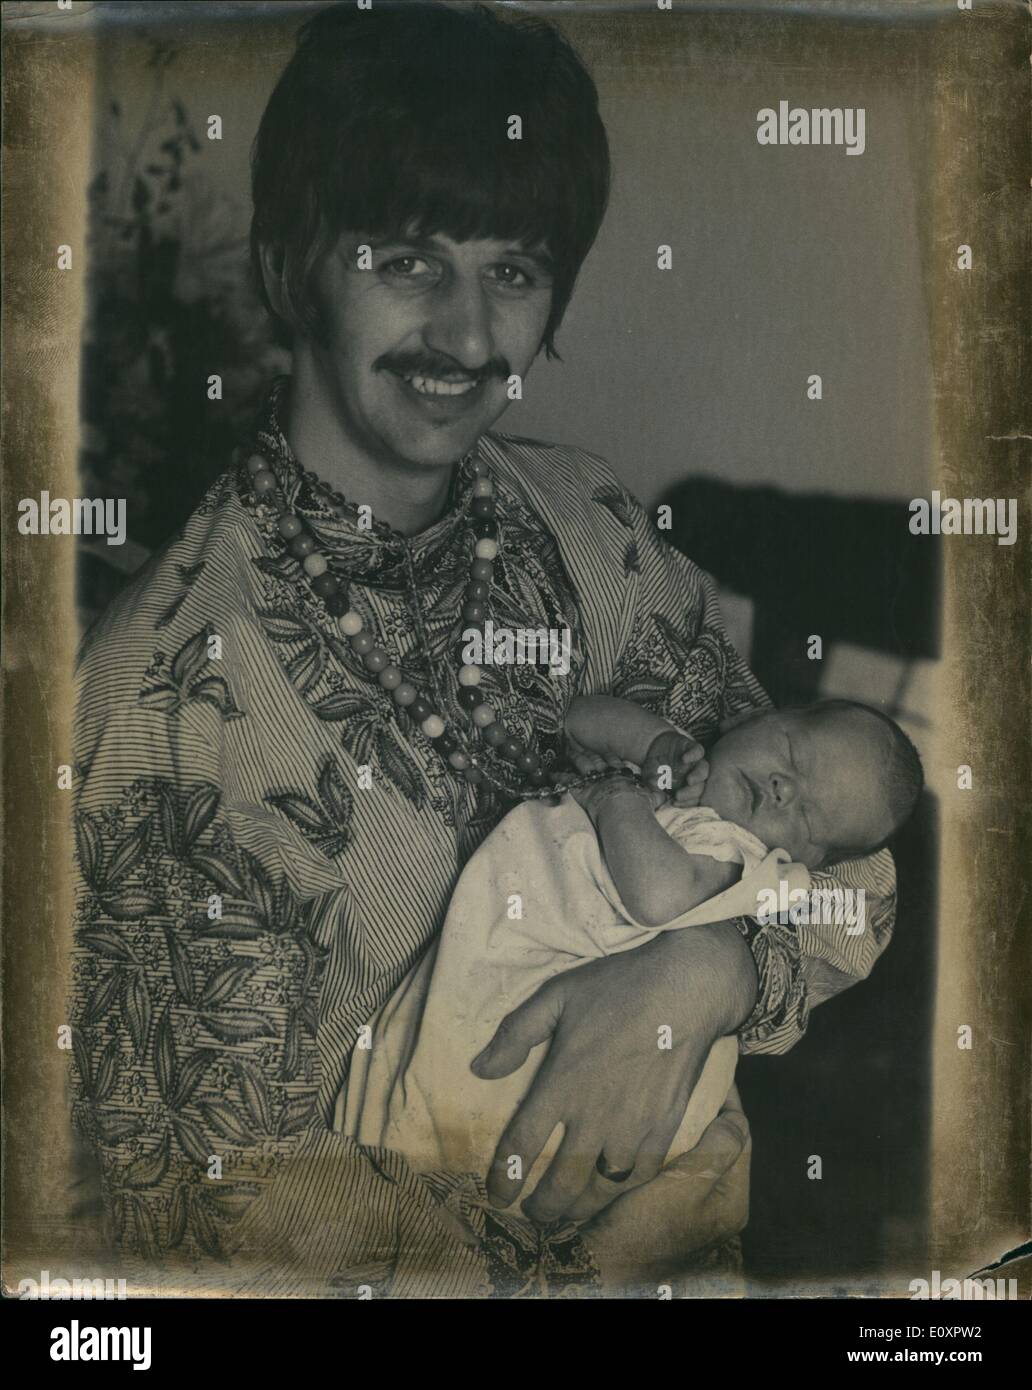 Agosto 08, 1967 - Prime foto dei Beatles Ringo Star con il suo nuovo bambino figlio Jason: mostra fotografica di Beatles Ringo Starr nella foto con il suo nuovo bambino figlio Jason in Queen Charlotte's Hospital. Foto Stock